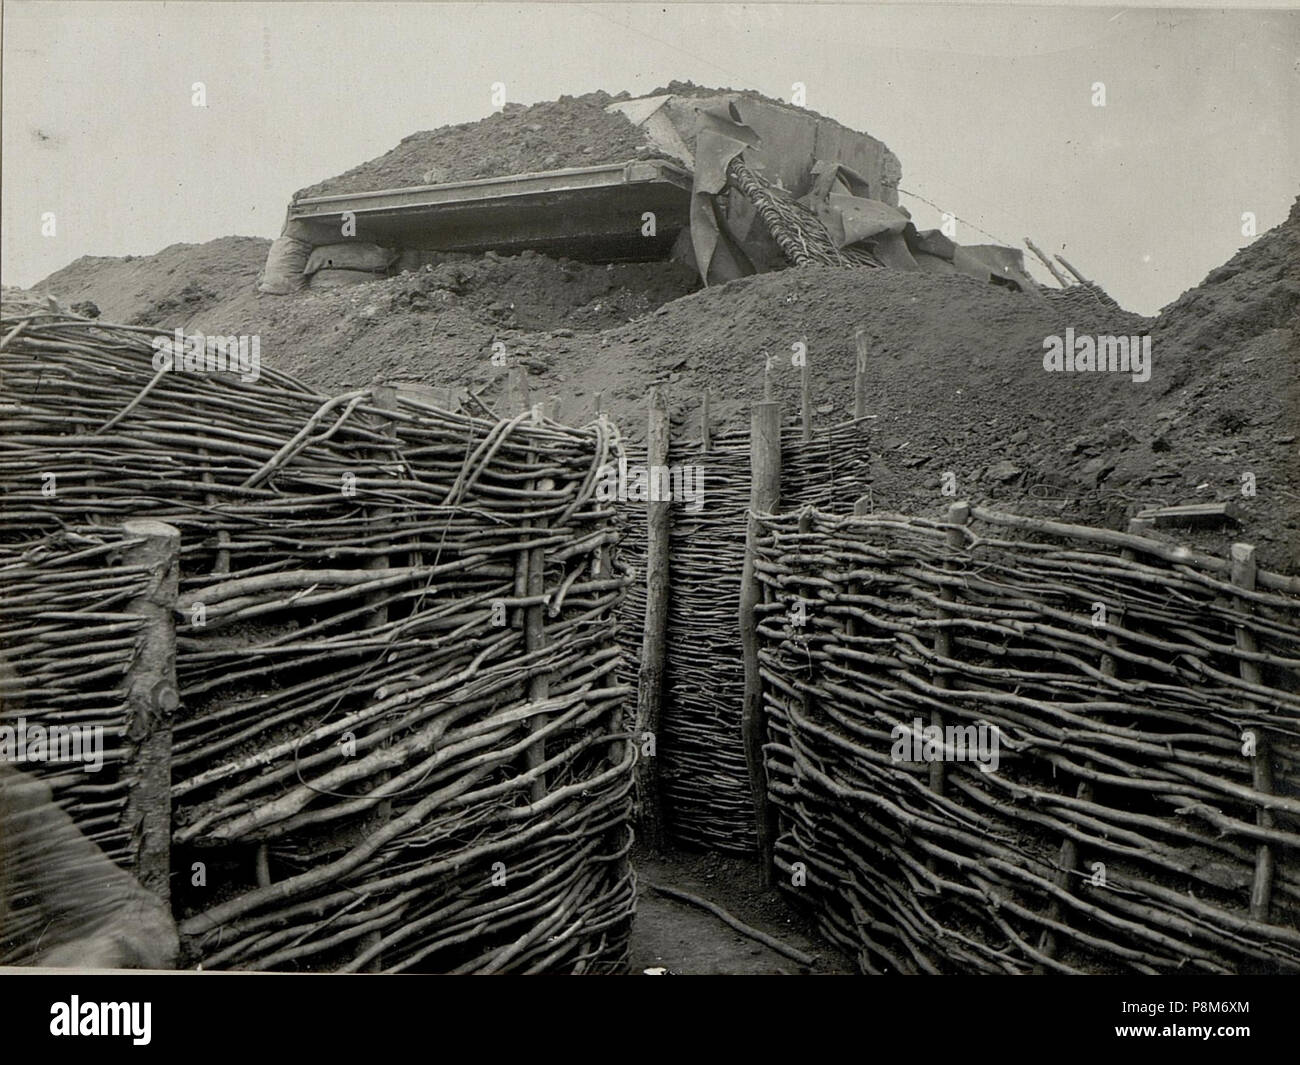 . 58 Granatsicherer Betonierter, von einer russischen Granate getroffener Artillerie Beobachtungsstand. Aufgenommen am 2.IV.1916. Inf.Rgt.Nr.52. (BildID 15536604) Foto Stock